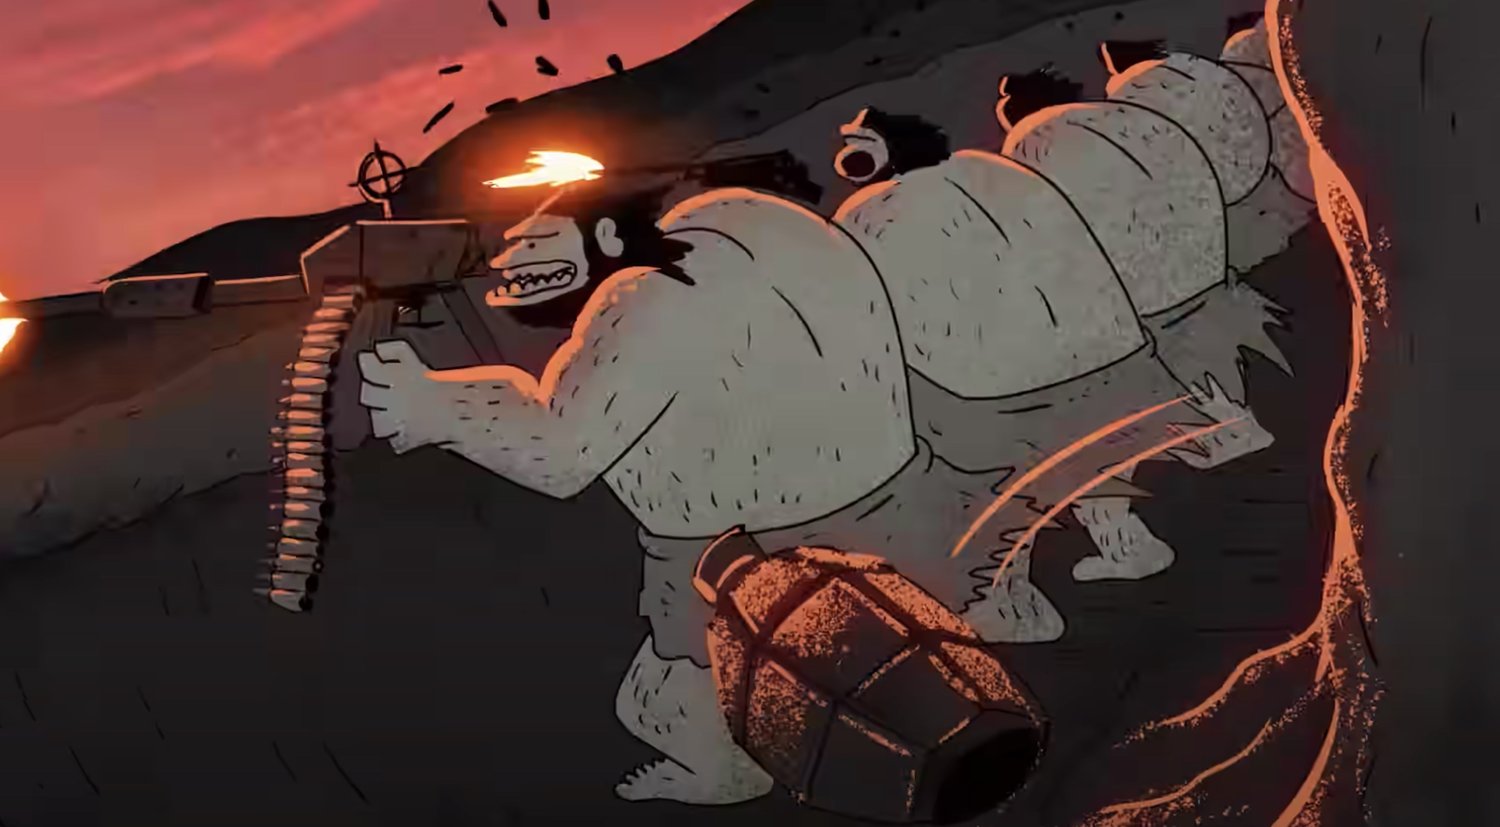 UN BREF DÉSACCORD Un court métrage d’animation montre l’évolution brutale des armes